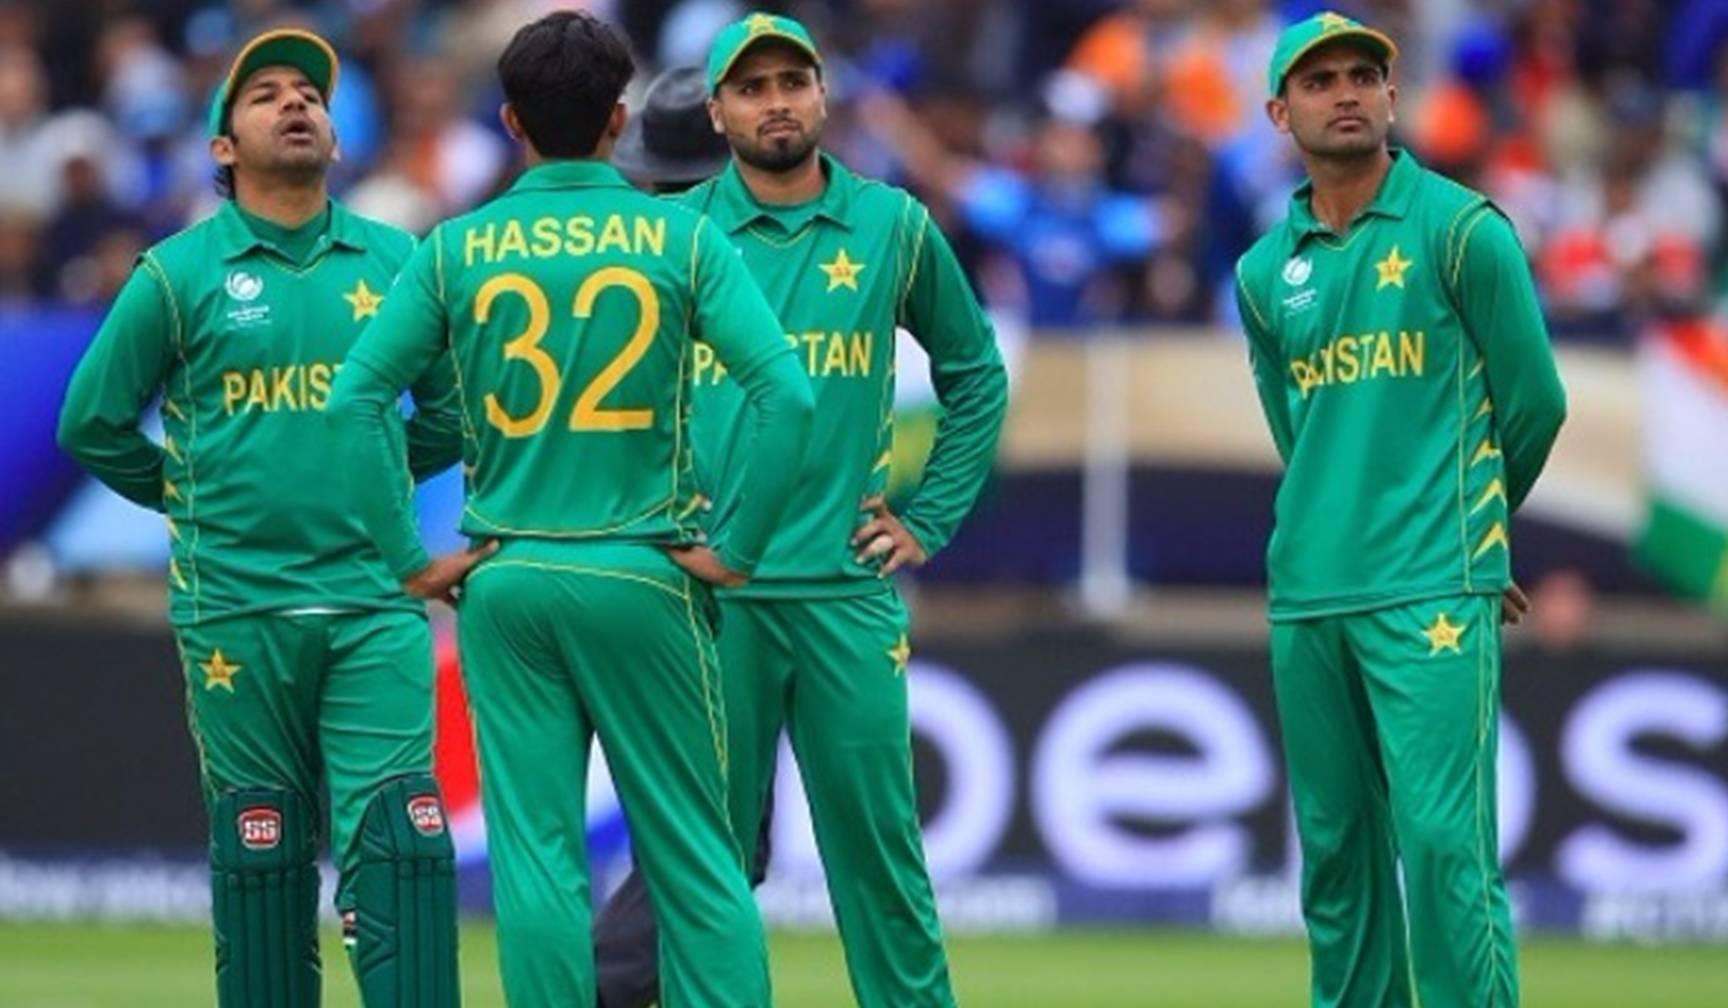 चैंपियंस ट्रॉफी: पाकिस्तान ने दक्षिण अफ्रीका को हराया, डकवर्थ लुईस नियम से हुआ फैसला